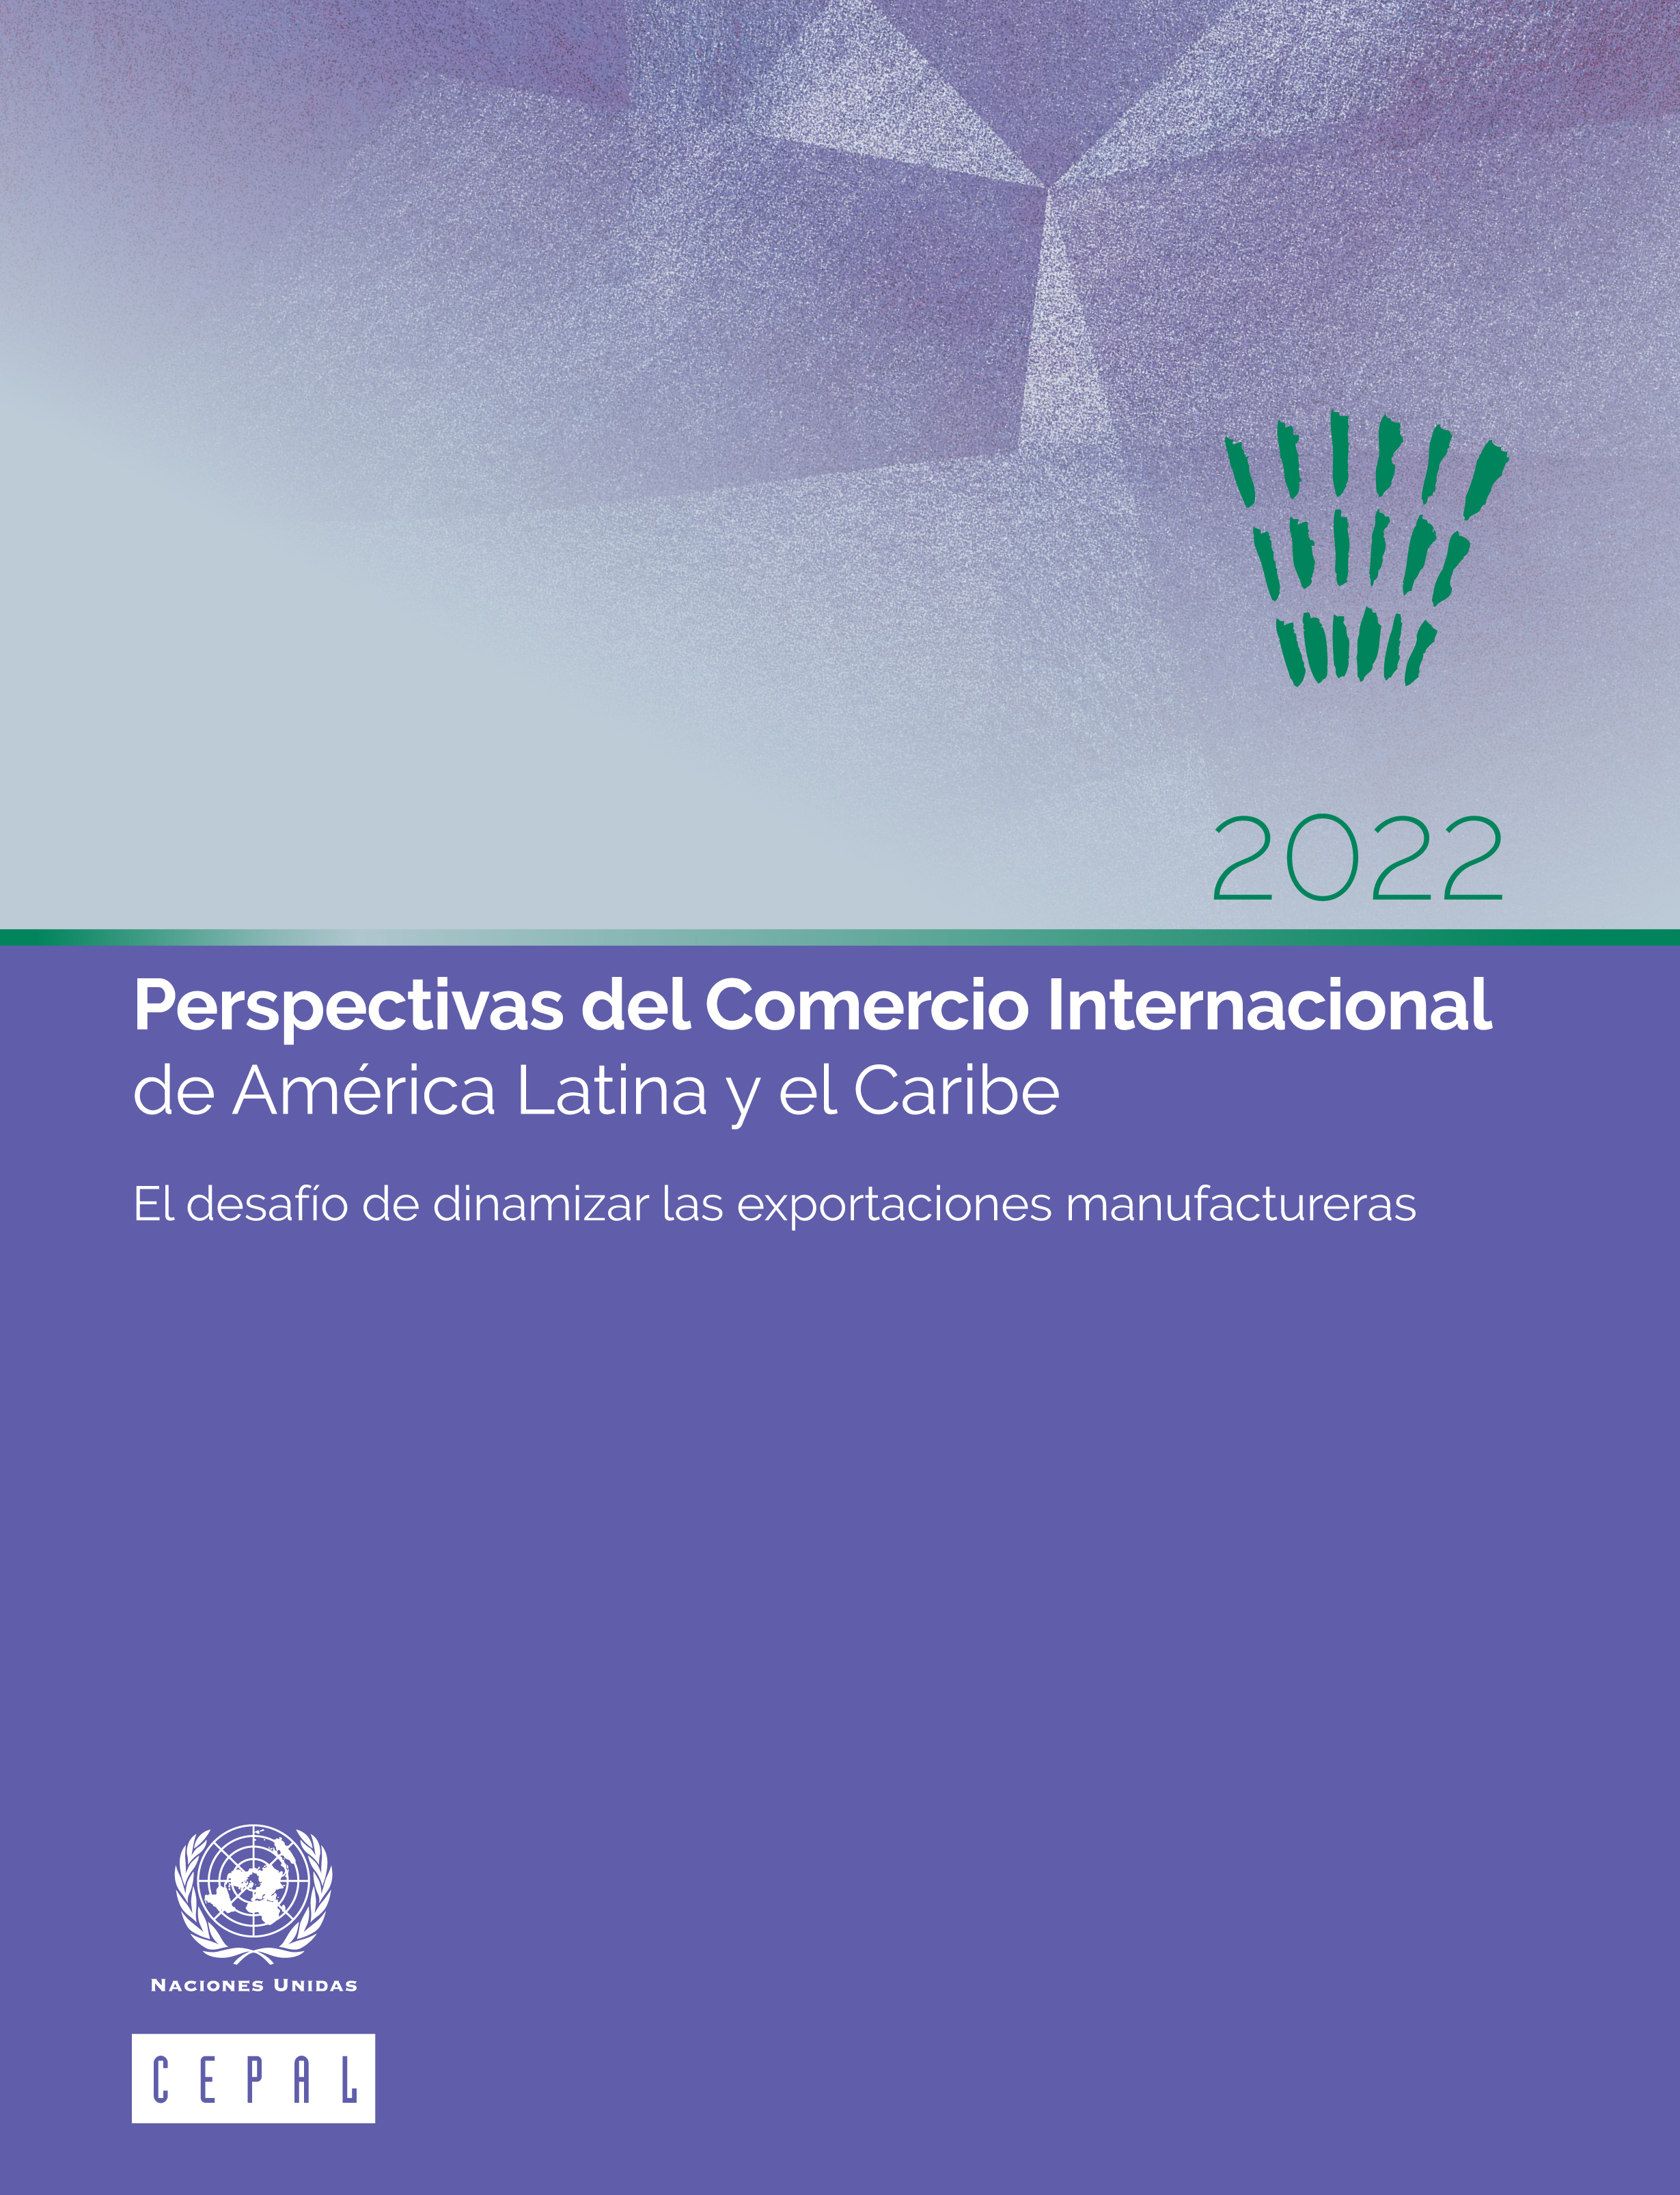 image of Perspectivas del Comercio Internacional de América Latina y el Caribe 2022